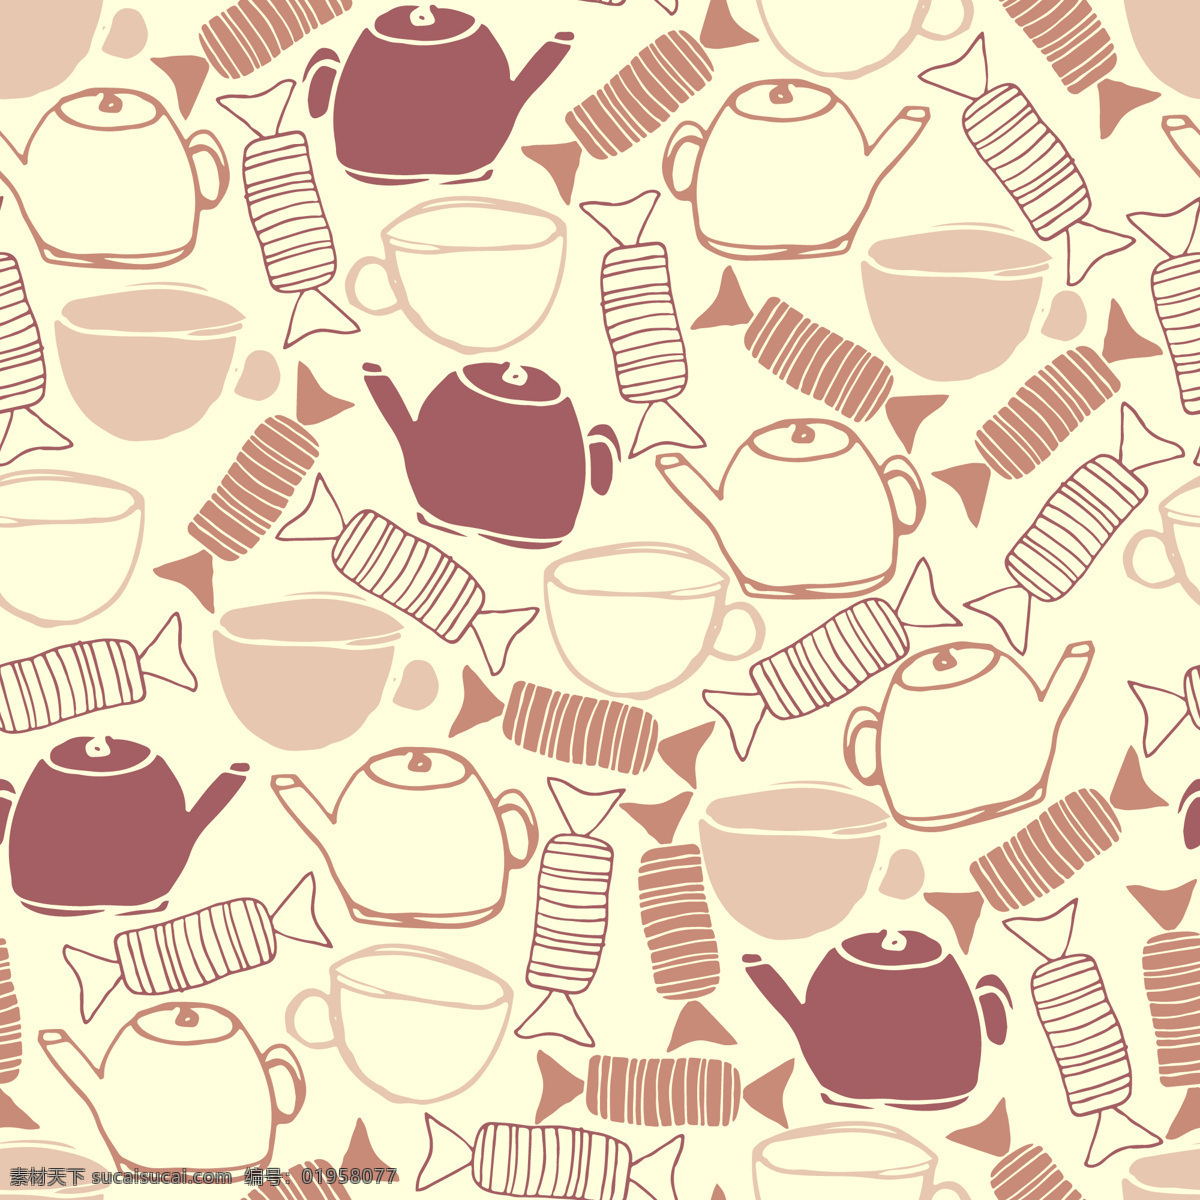 日 系 清新 糖果 壁纸 图案 装饰设计 茶杯 水壶 壁纸图案